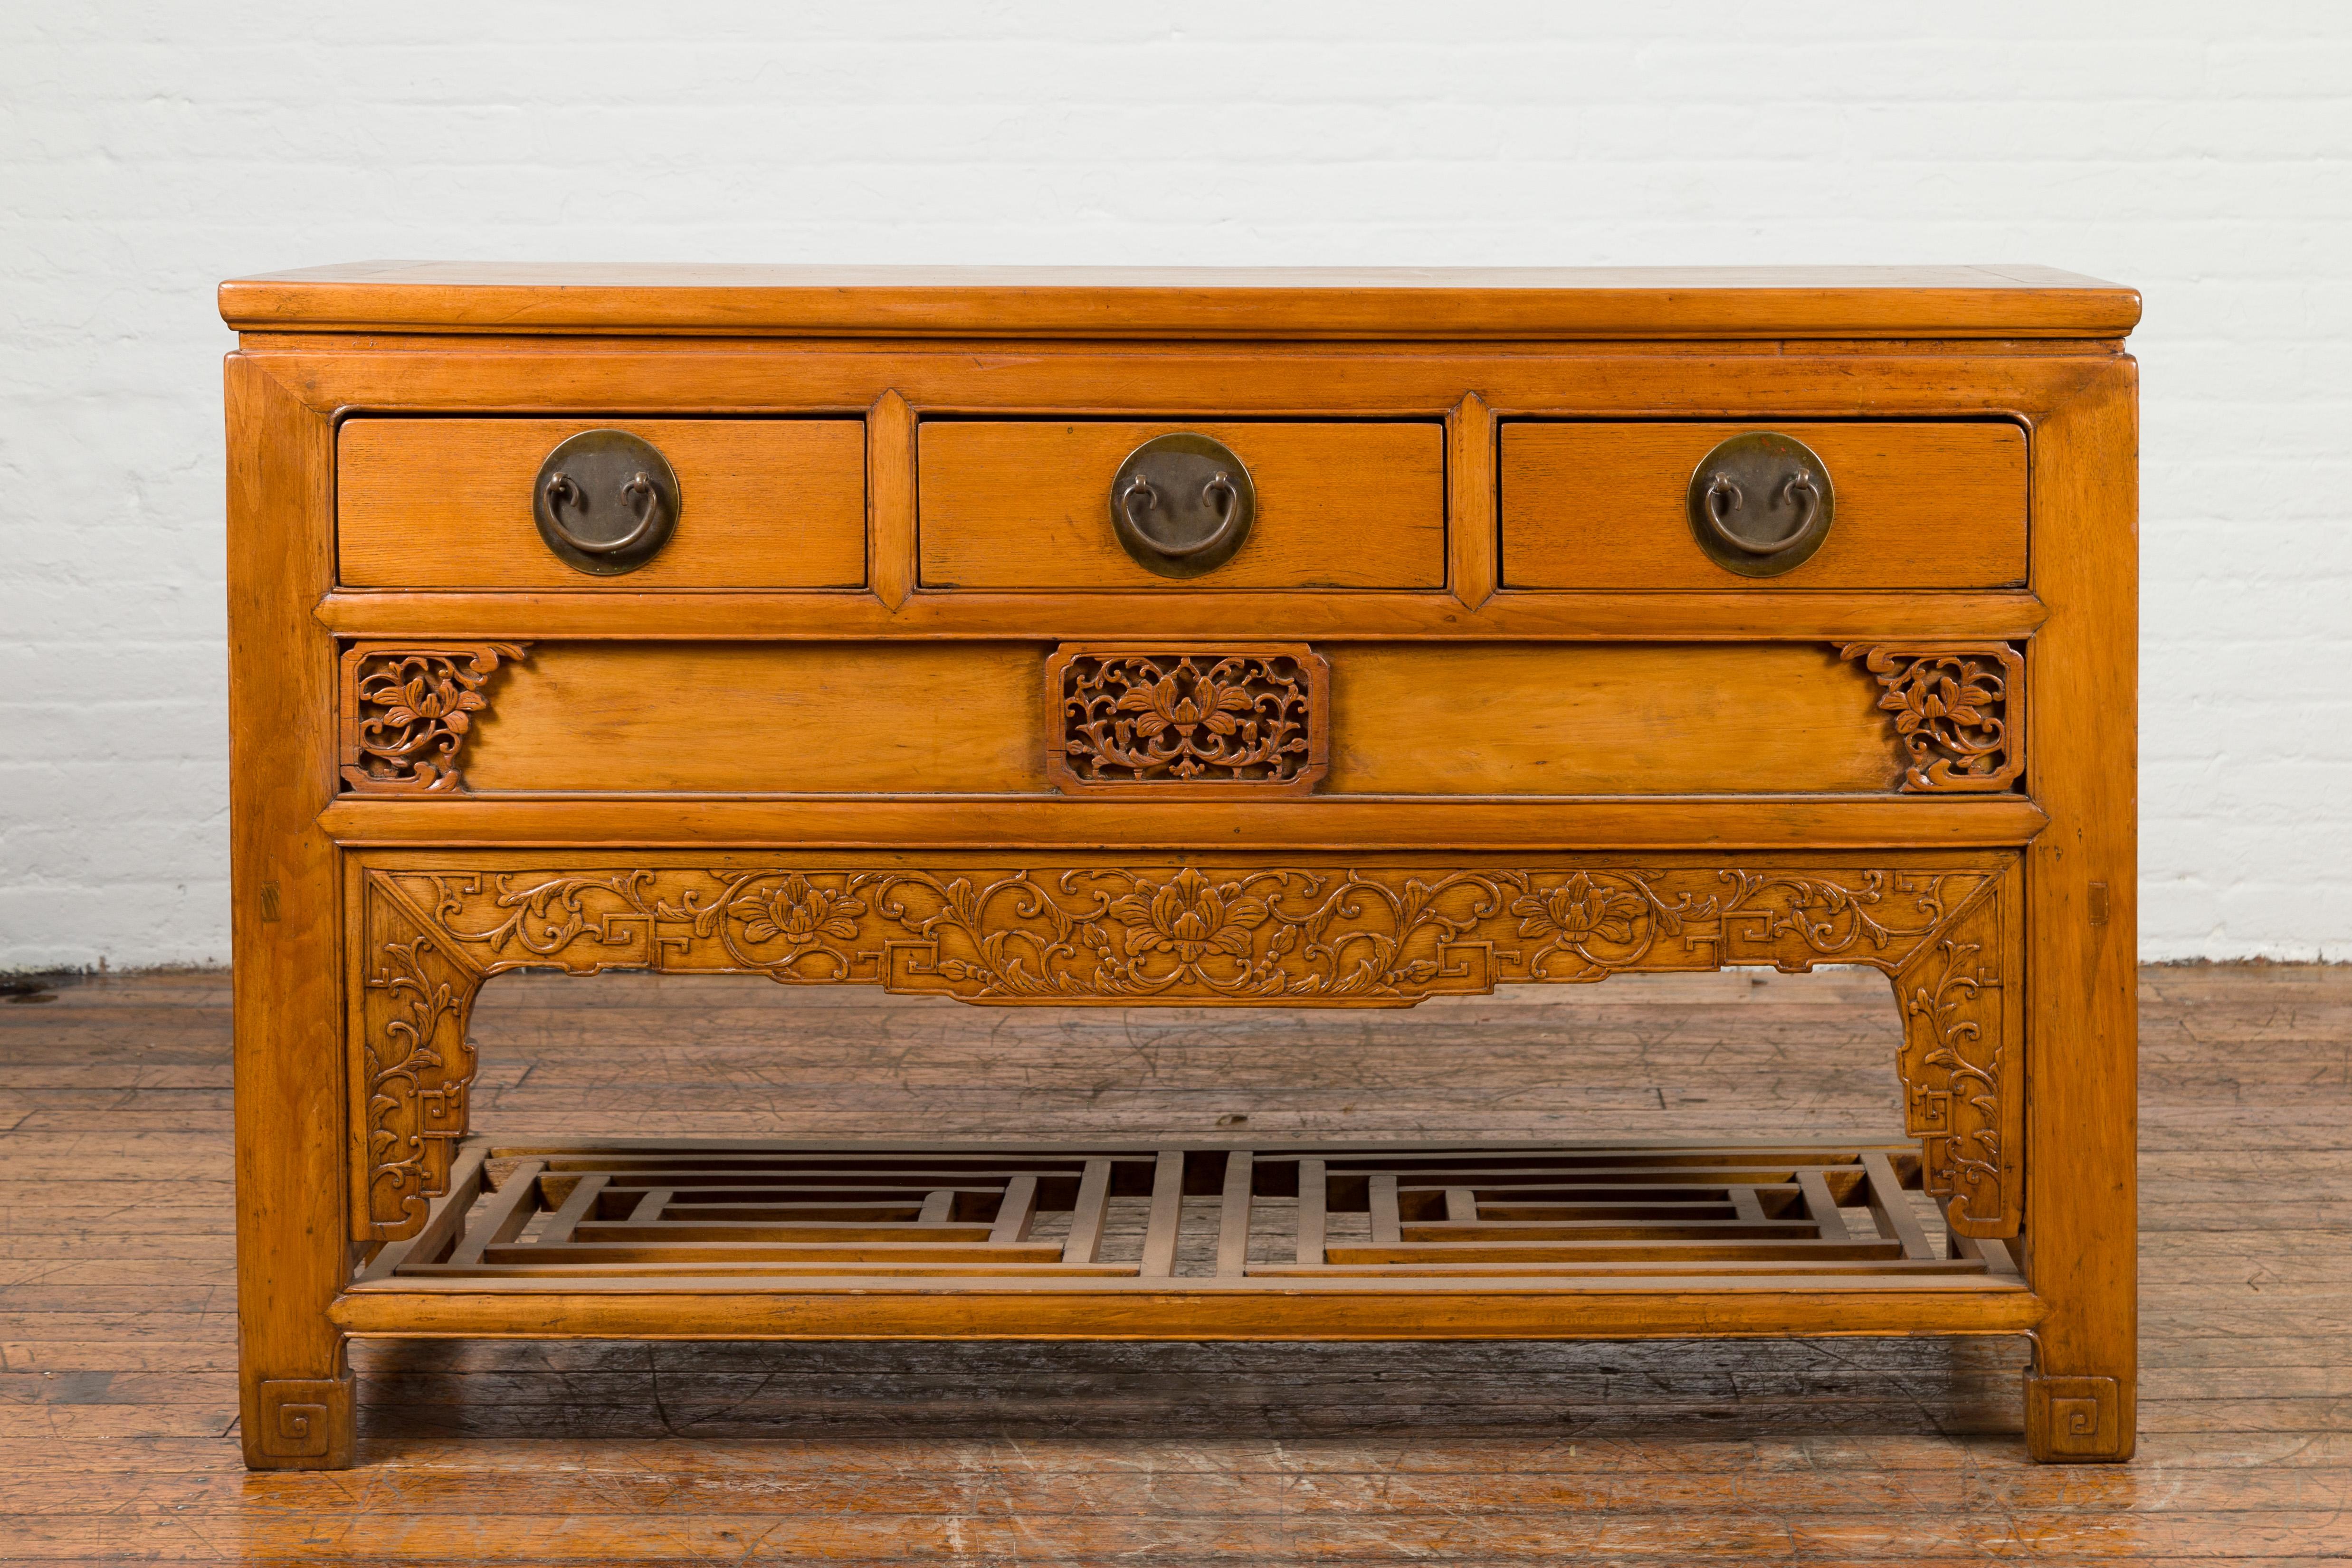 Ein geschnitztes hölzernes Sideboard aus der chinesischen Qing-Dynastie aus dem 19. Jahrhundert mit drei Schubladen und einem unteren Regal. Diese taillierte Anrichte wurde während der Qing-Dynastie in China hergestellt. Sie besteht aus einer